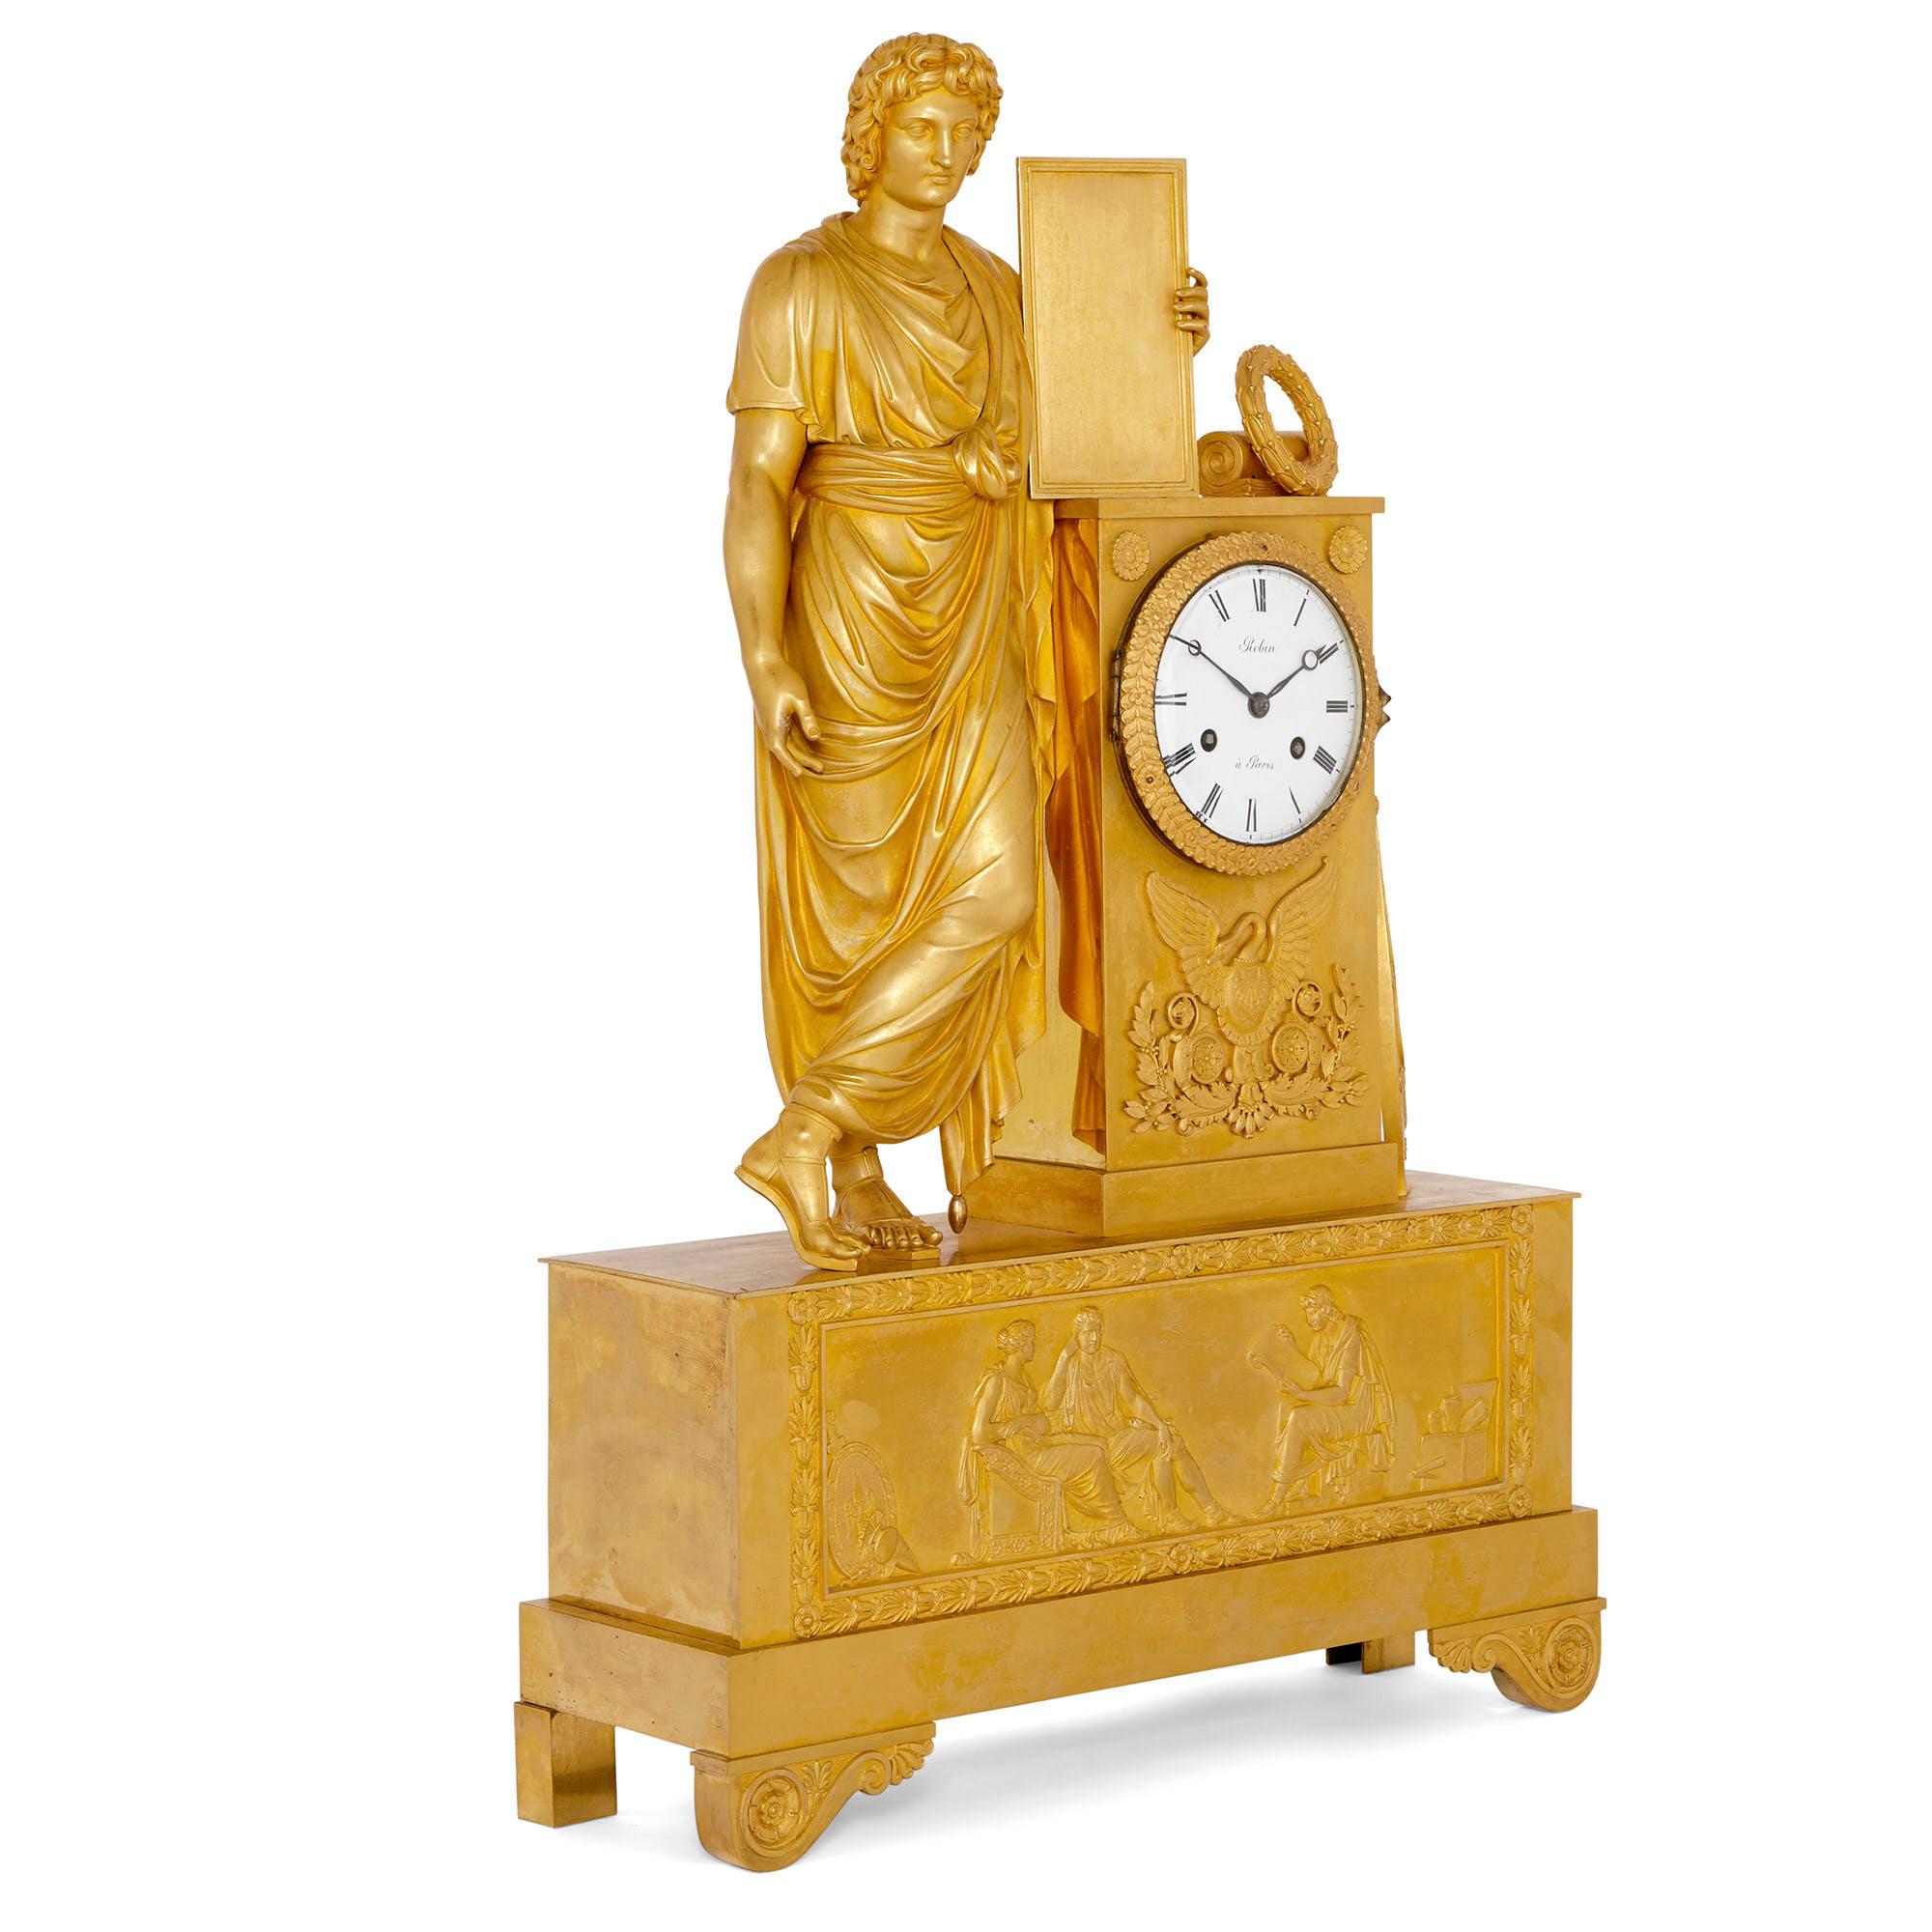 Diese Kaminsimsuhr aus Ormolu (vergoldeter Bronze) ist ein wunderschönes Designerstück mit Flachreliefverzierungen und dreidimensionalen Skulpturen im neoklassischen Stil. 

Die Uhr hat die Form eines hohen, rechteckigen Gehäuses mit einem runden,